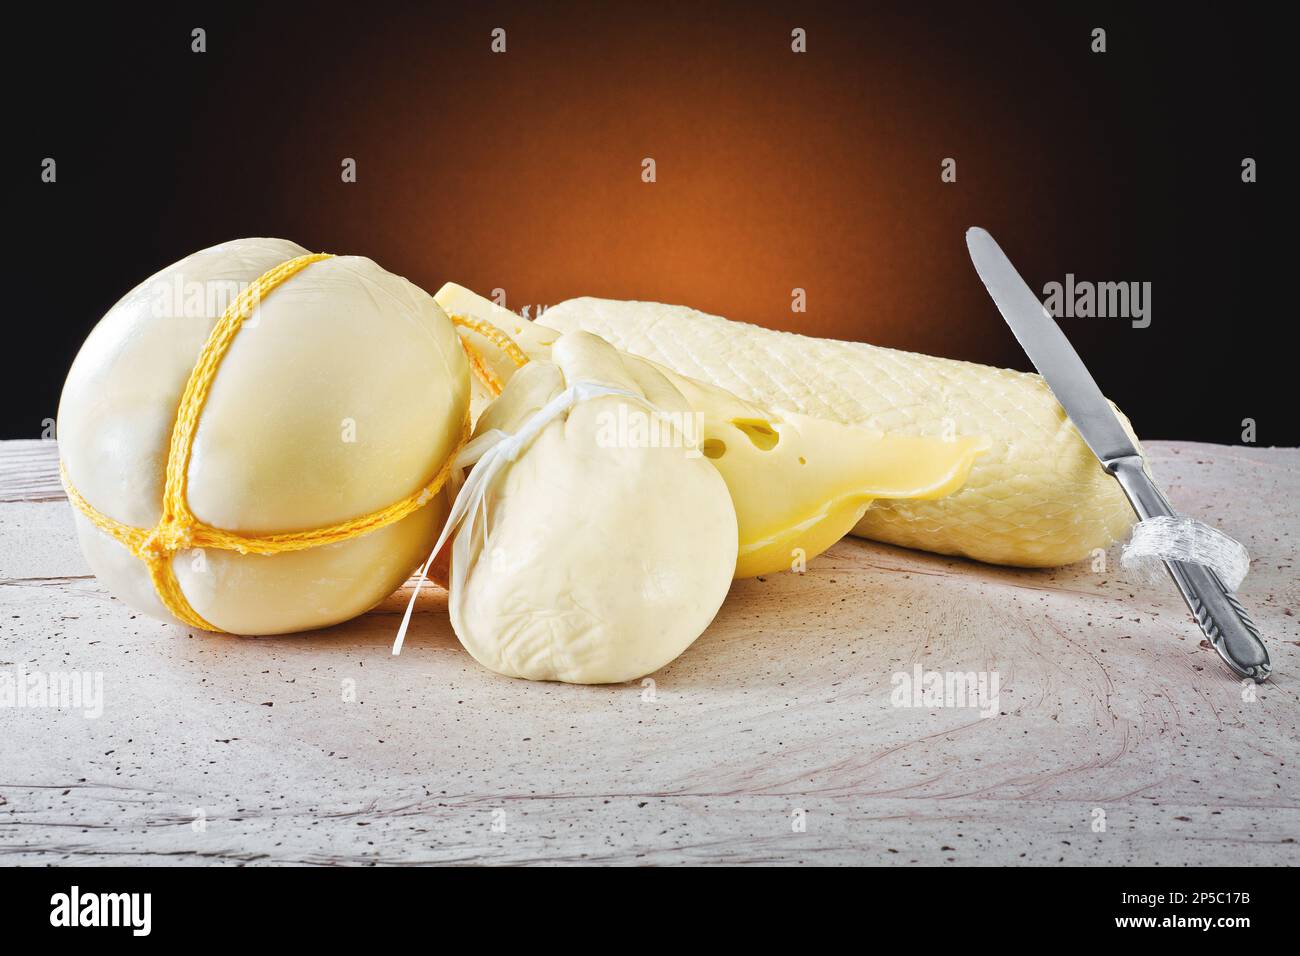 Diversi tipi di formaggi italiani: Scamorza, provolone e caciocavallo con latte vaccino. Foto Stock